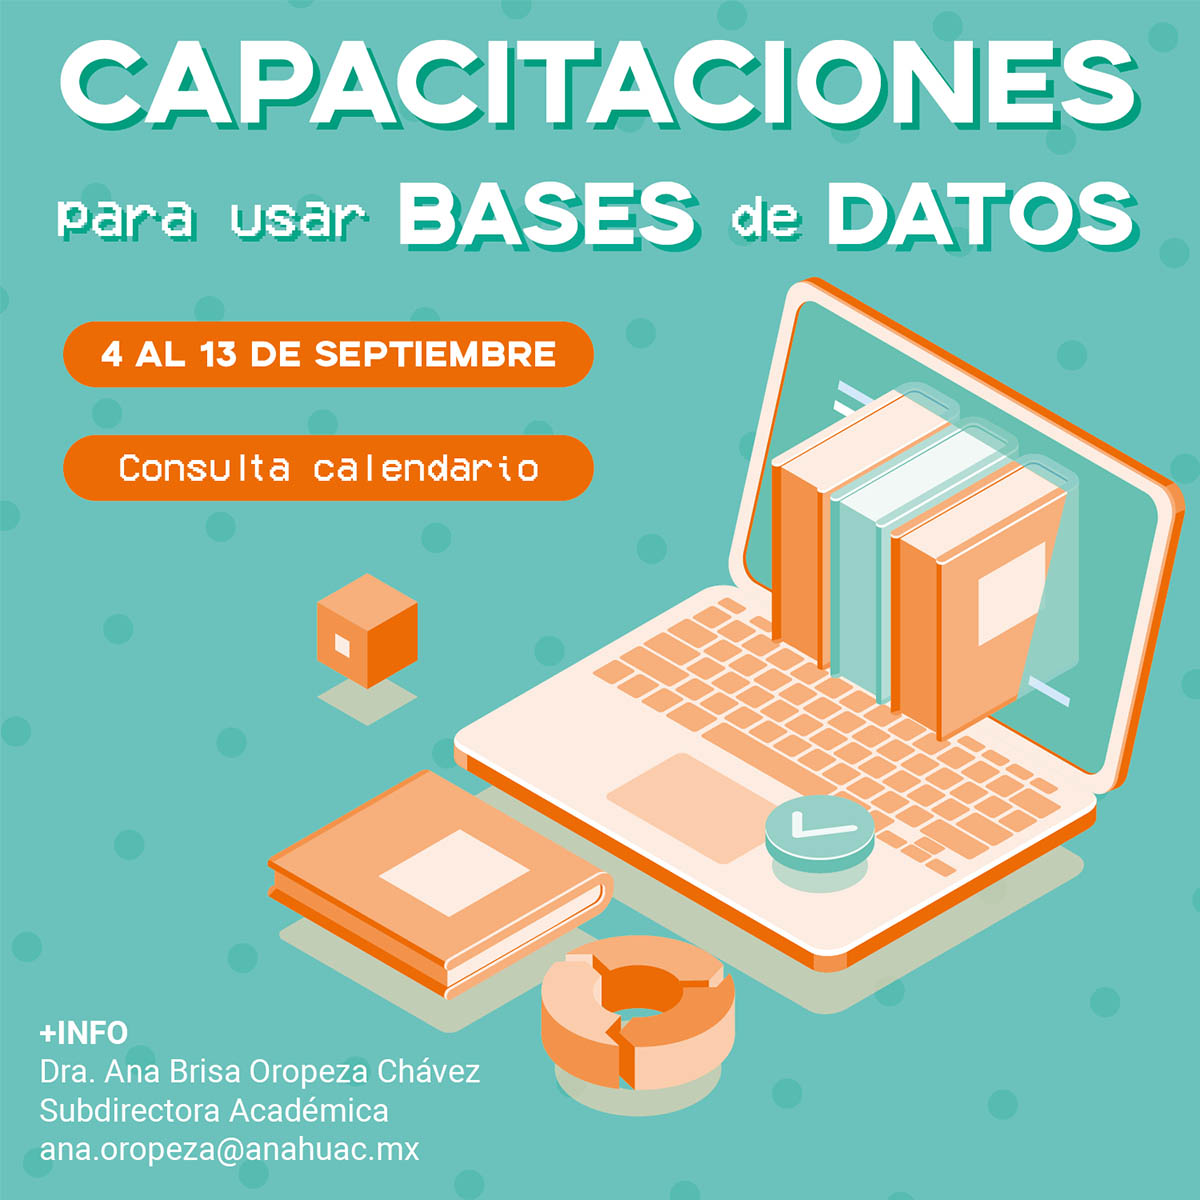 Capacitaciones para usar Bases de Datos